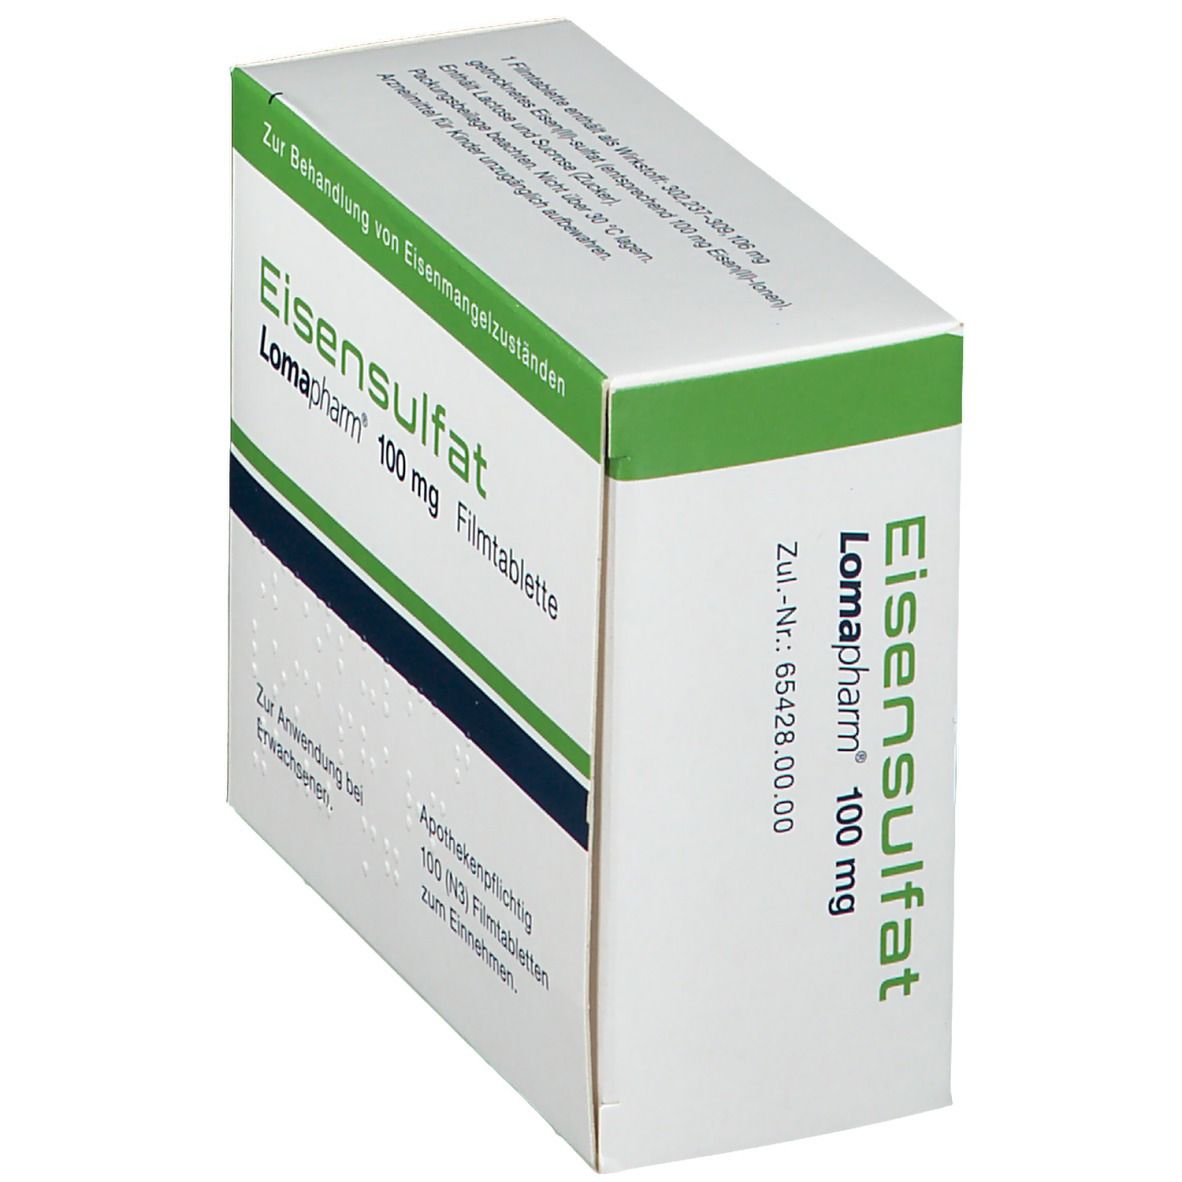 Eisensulfat Lomapharm® 100 mg Filmtabletten